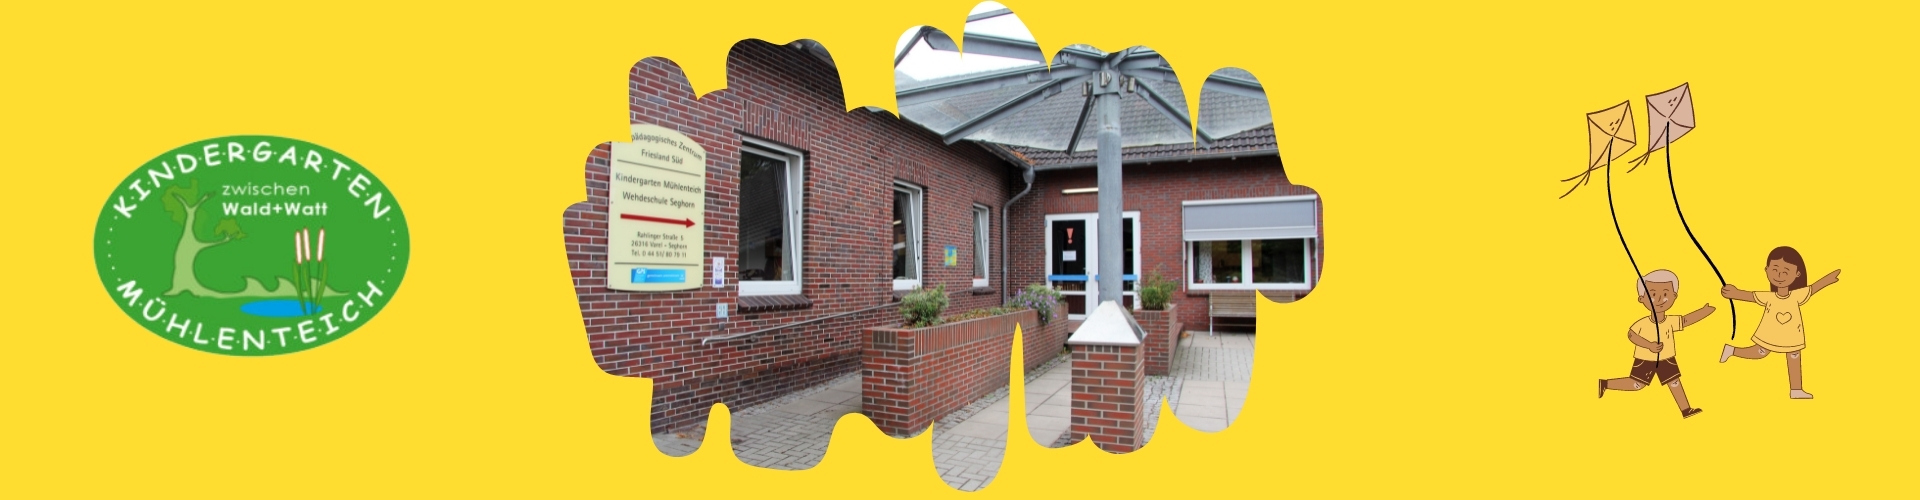 Man sieht den Eingang des Kindergarten Mühlenteich Seghorn. Das Schild des Kindergartens an der Wand, ein Geländer und zwei Gänge